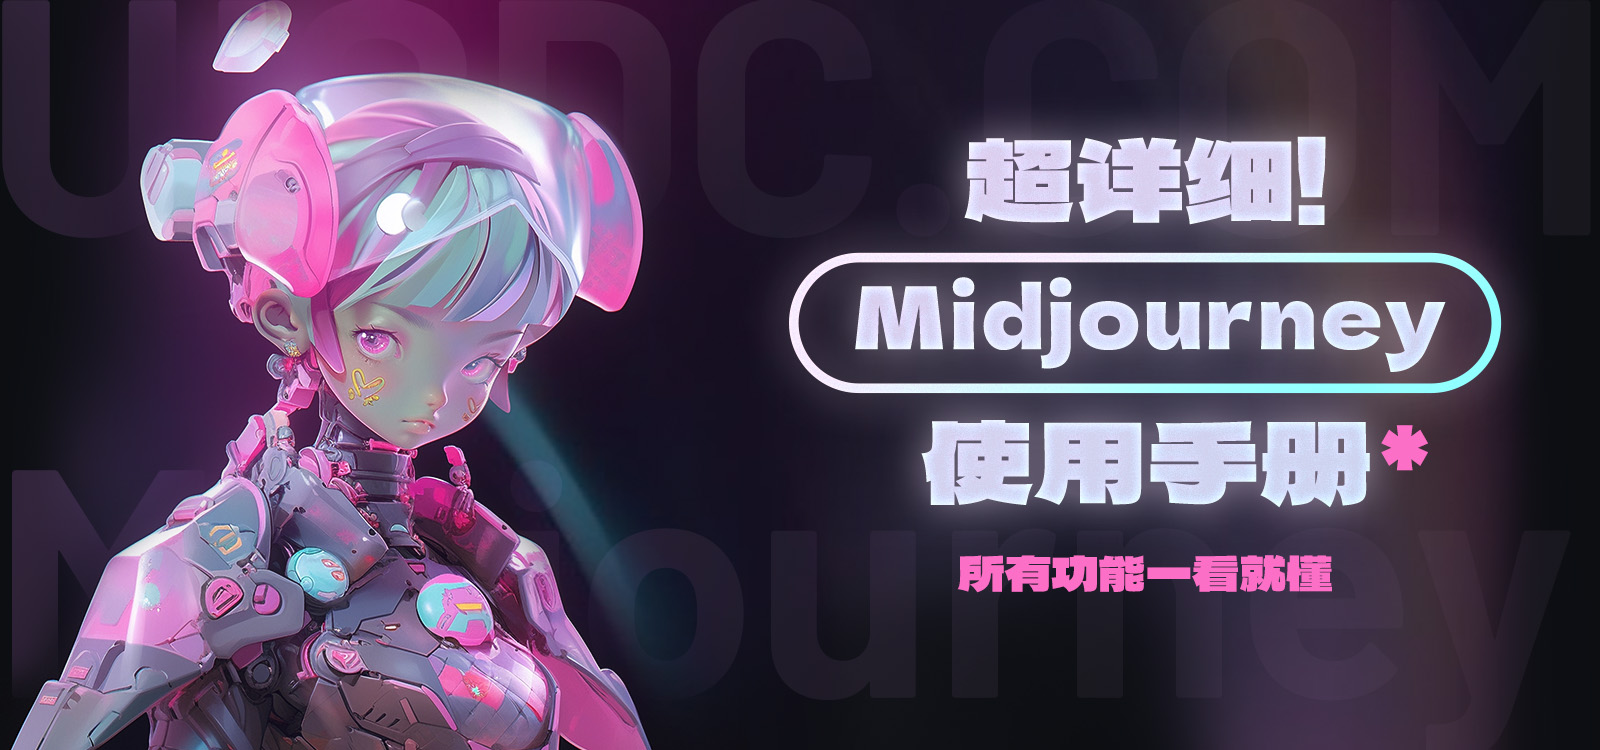 Midjourney用户手册中文版.jpg